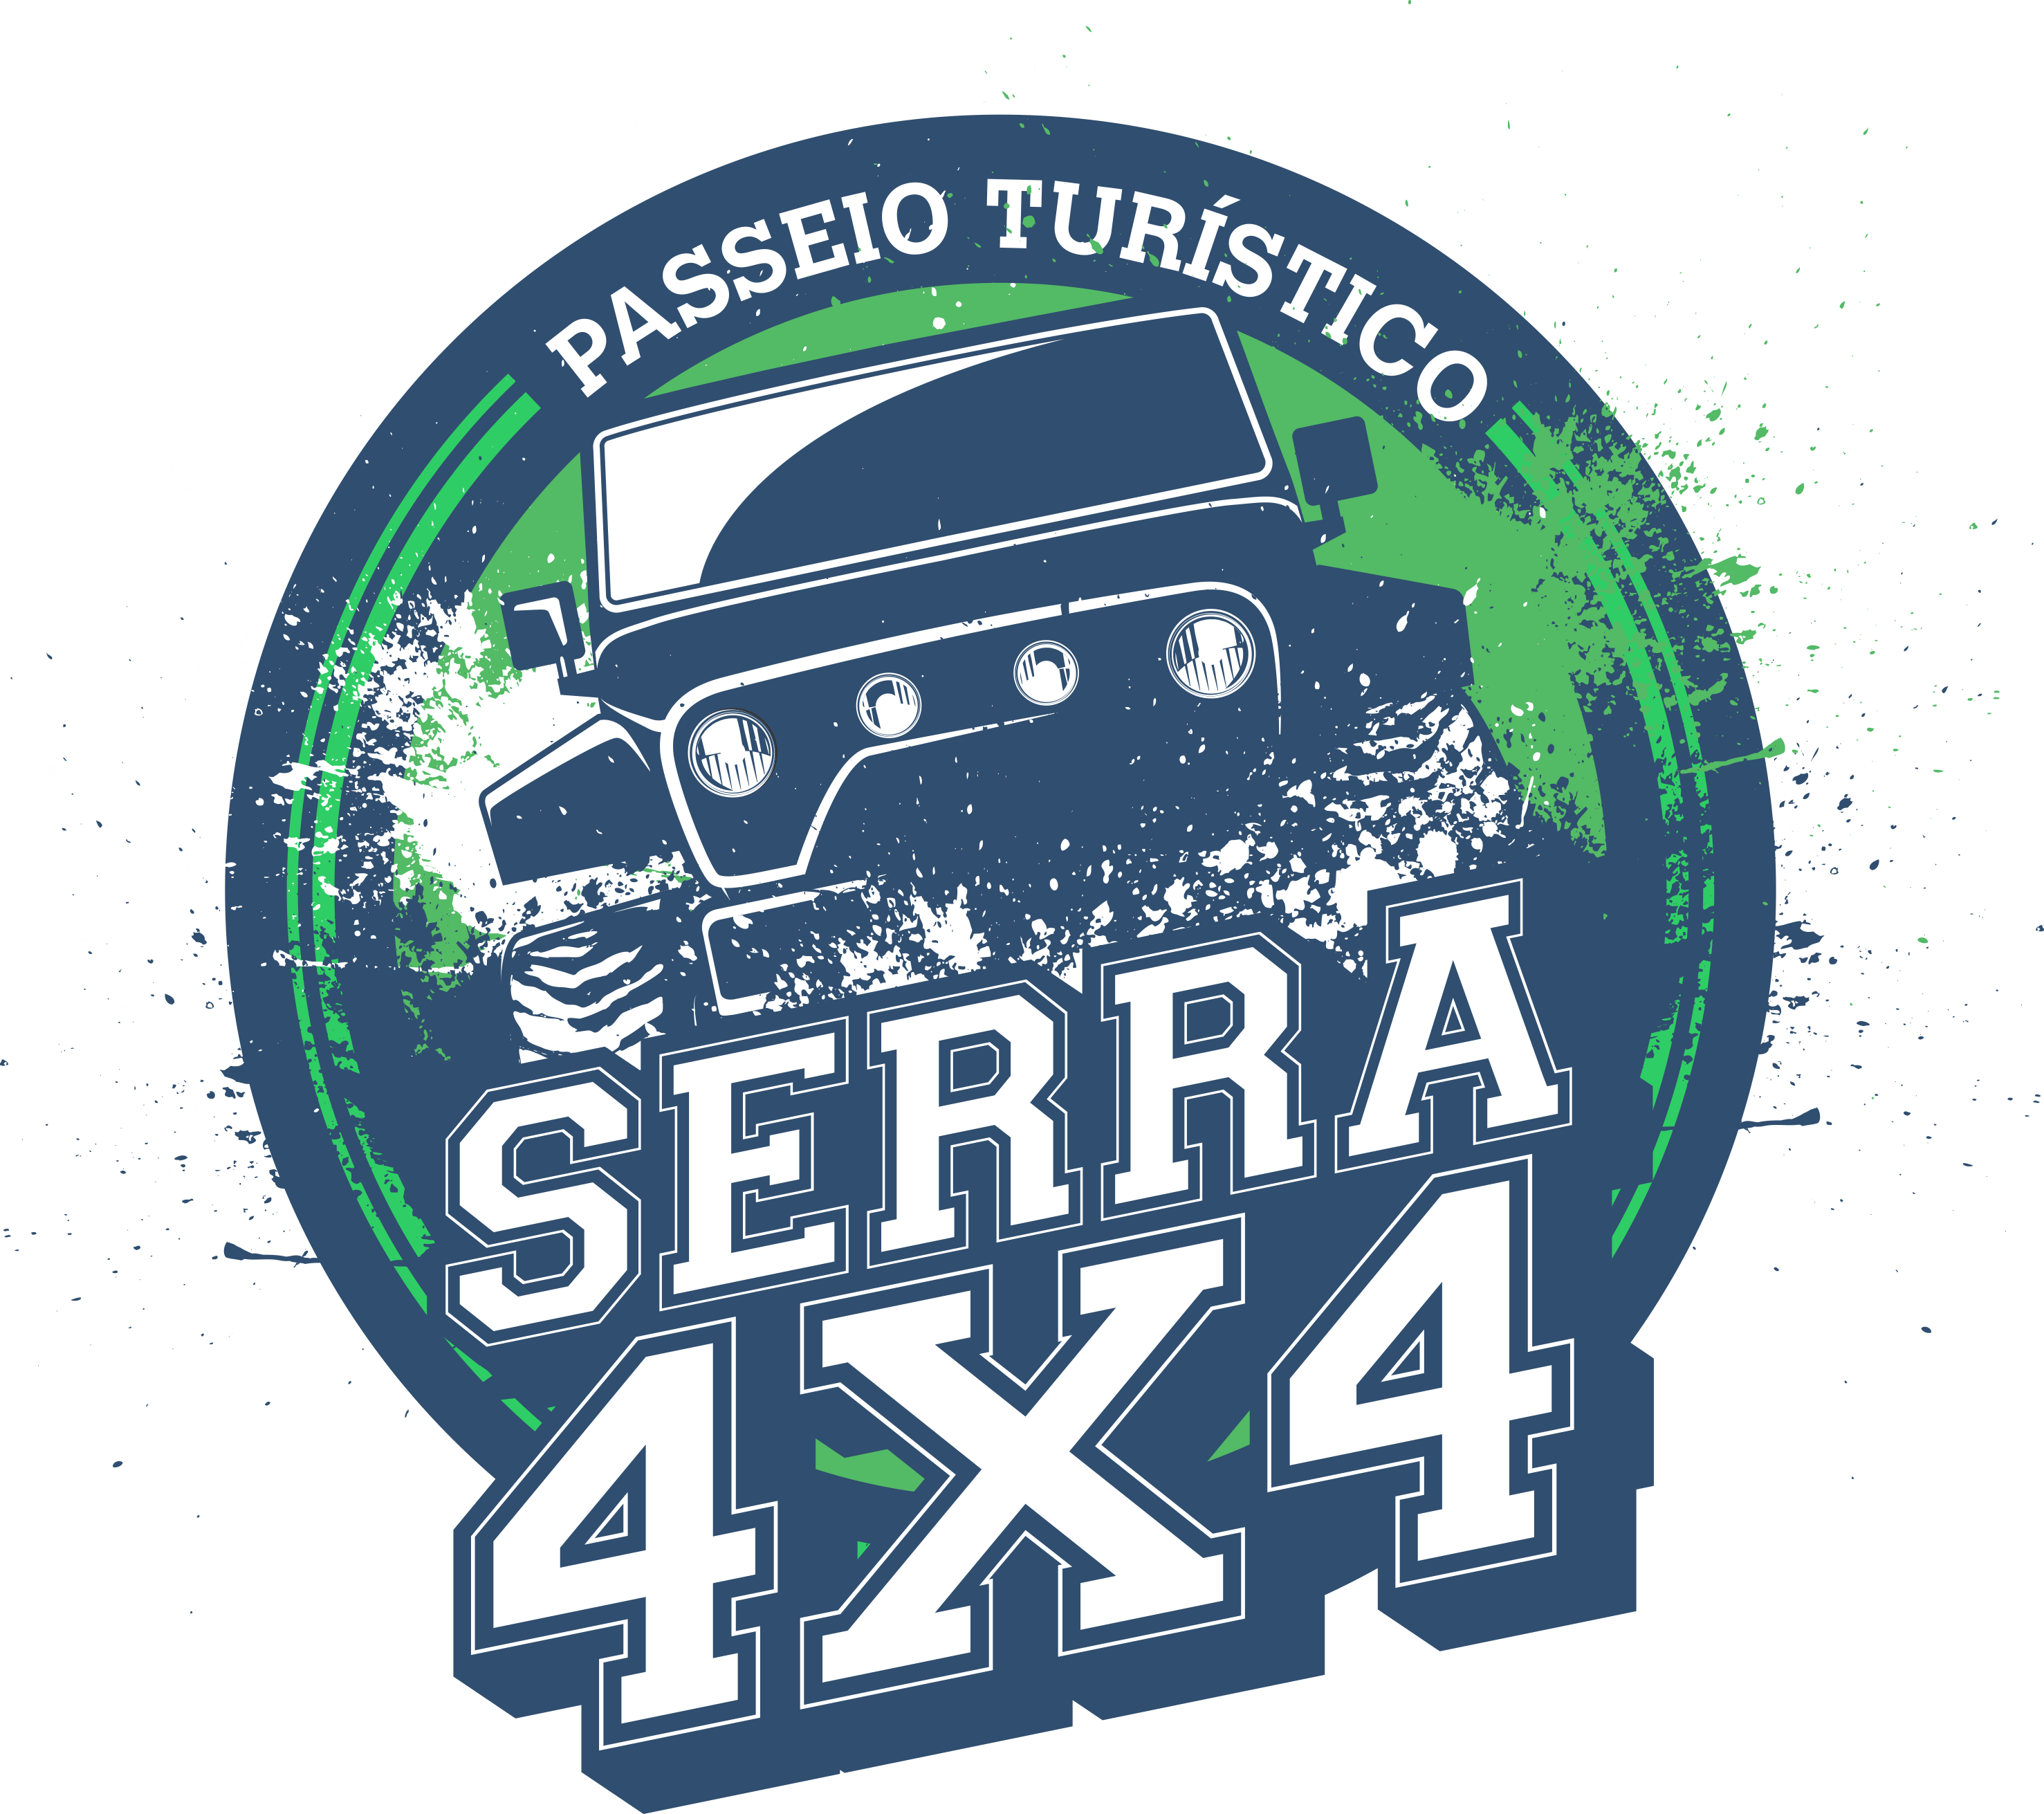 Serra 4x4